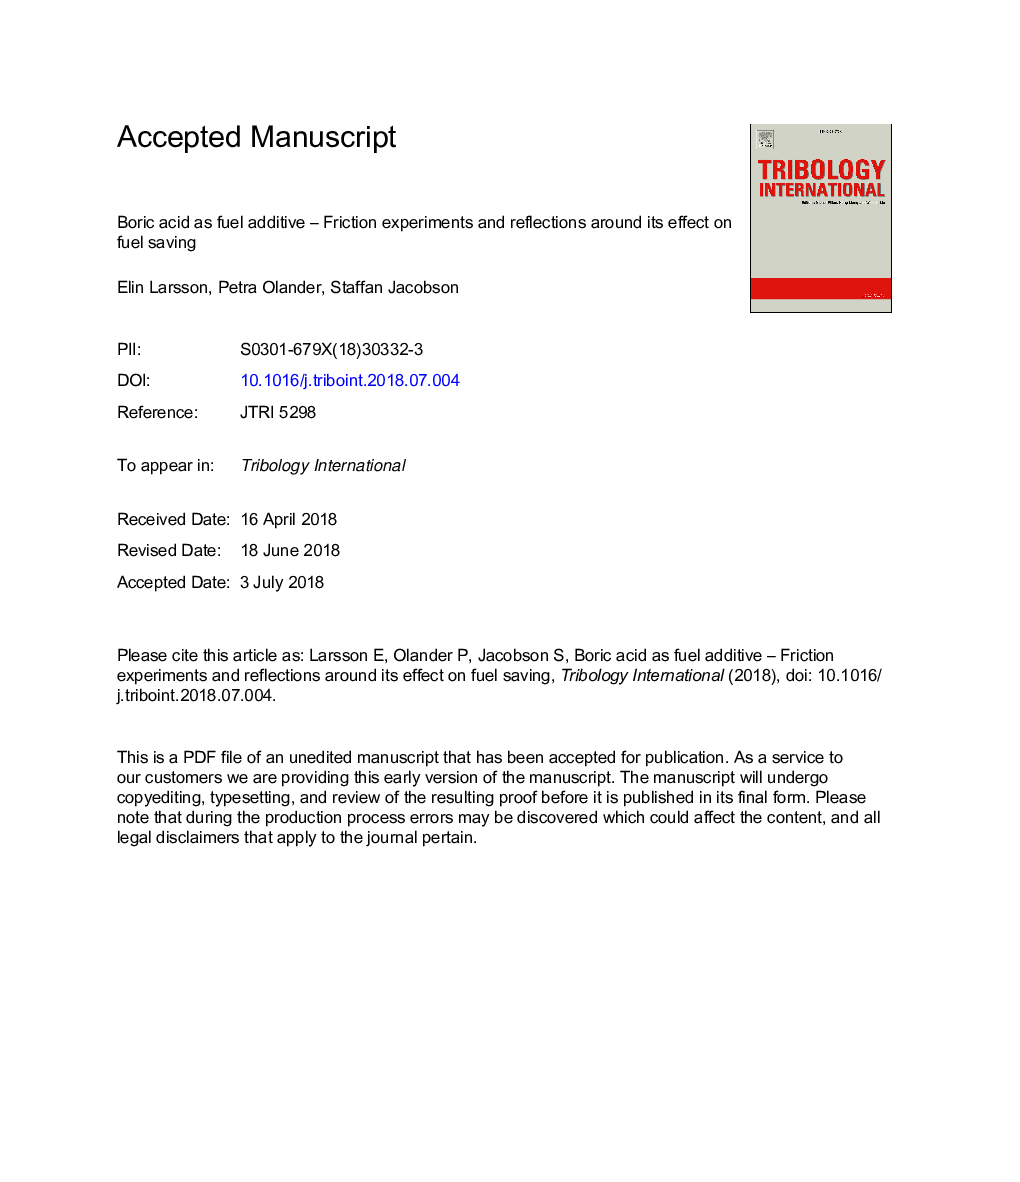 اسید بوریک به عنوان افزودنی سوخت - آزمایش های اصطکاک و بازتاب در اطراف اثر آن بر صرفه جویی در سوخت 